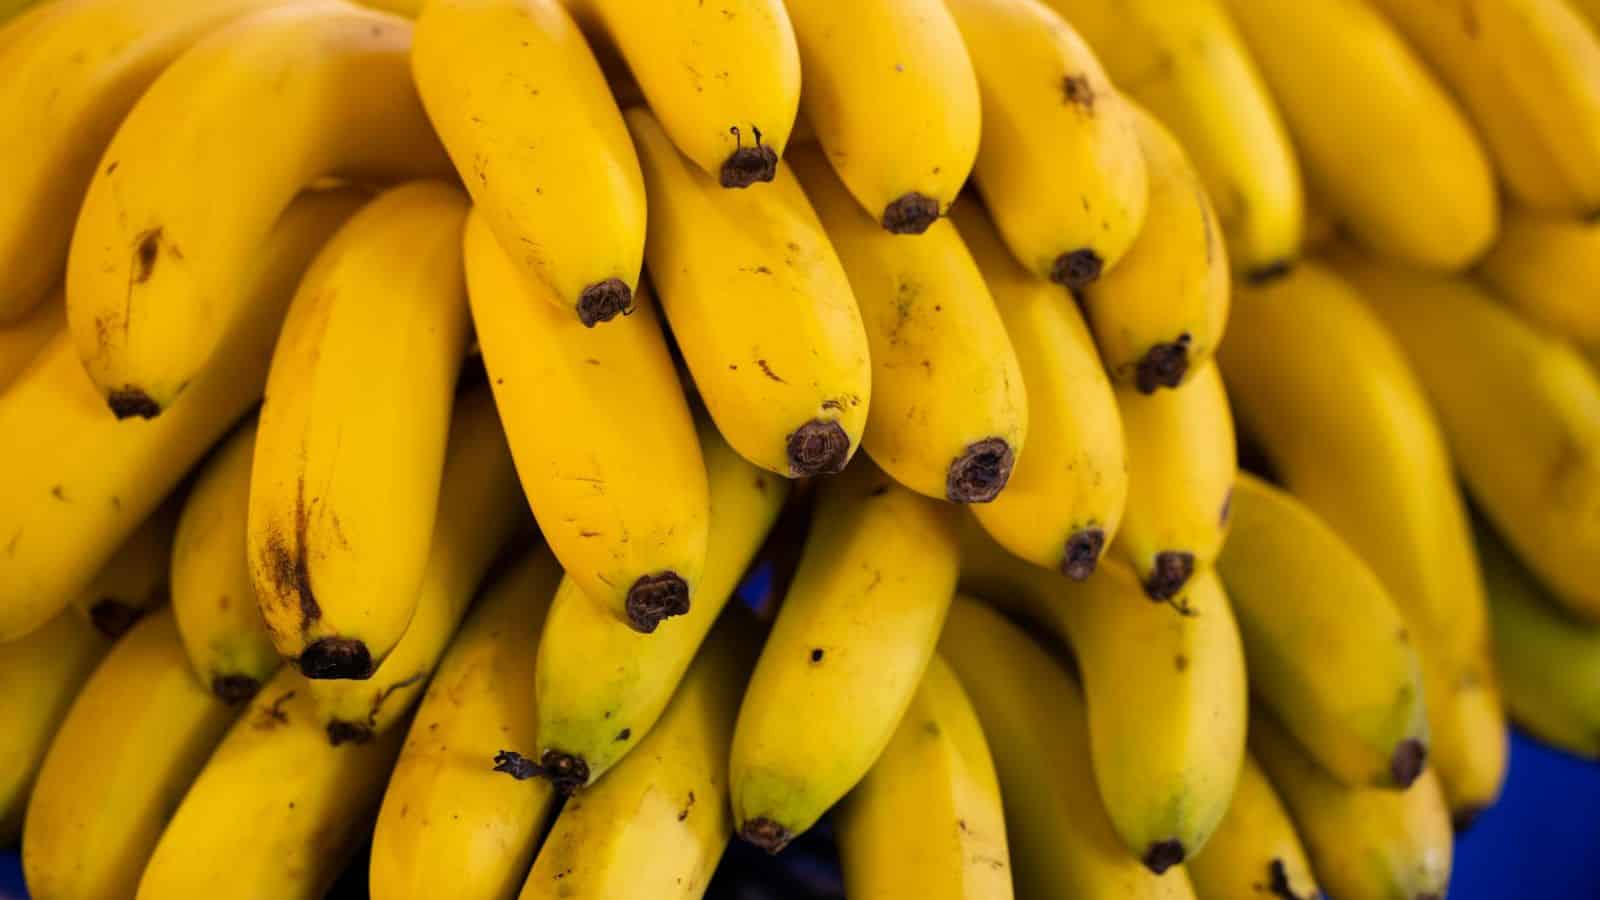 Close-up Shot of Yellow Bananas.